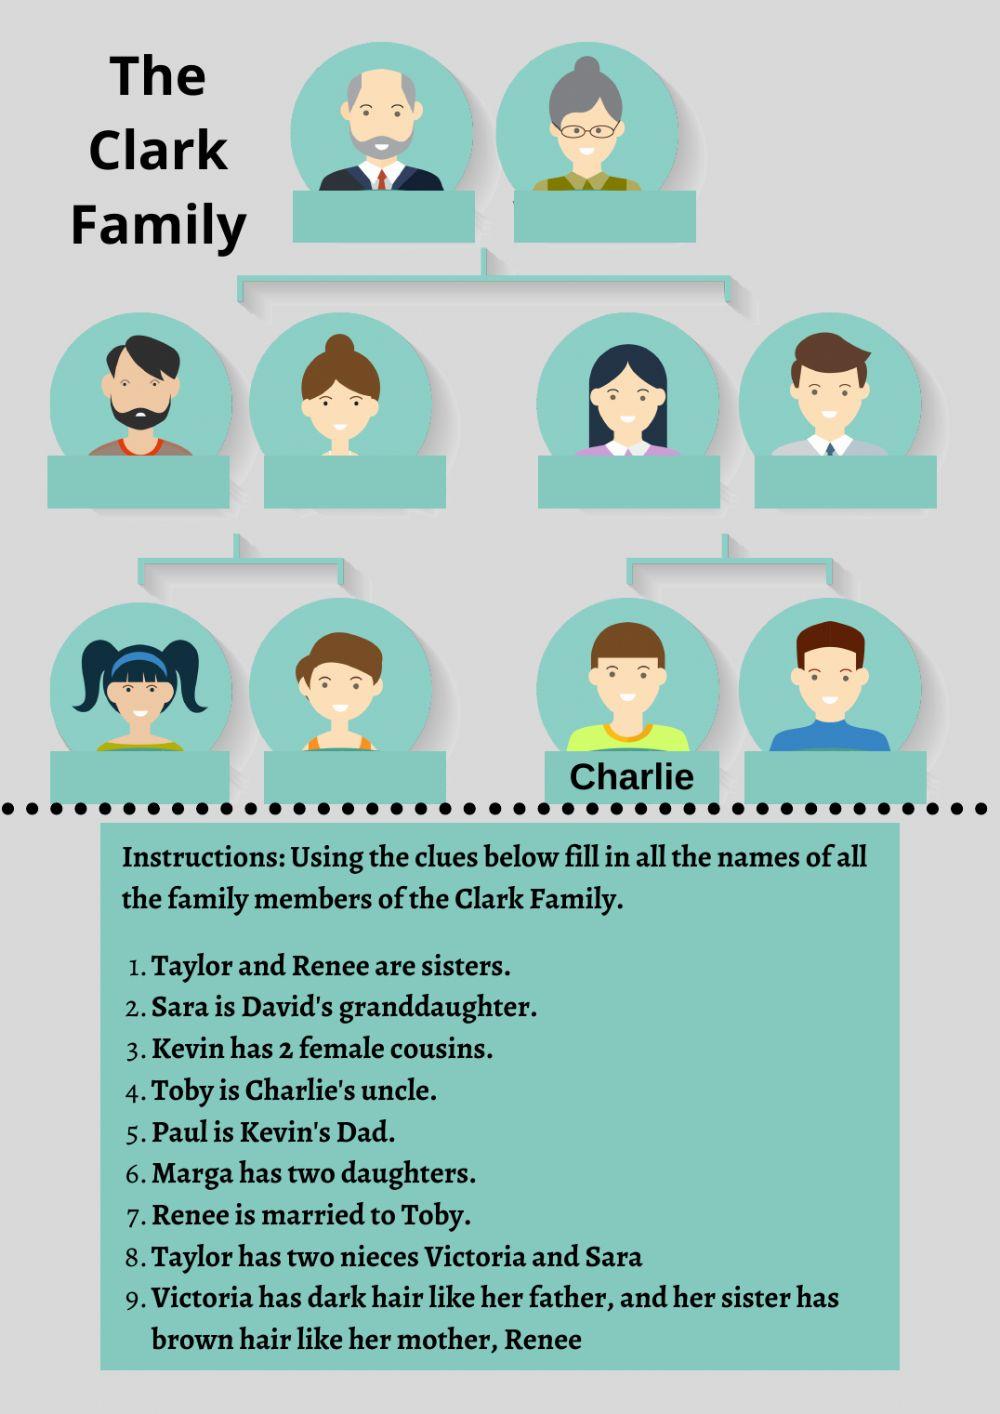 The Clark Family Tree